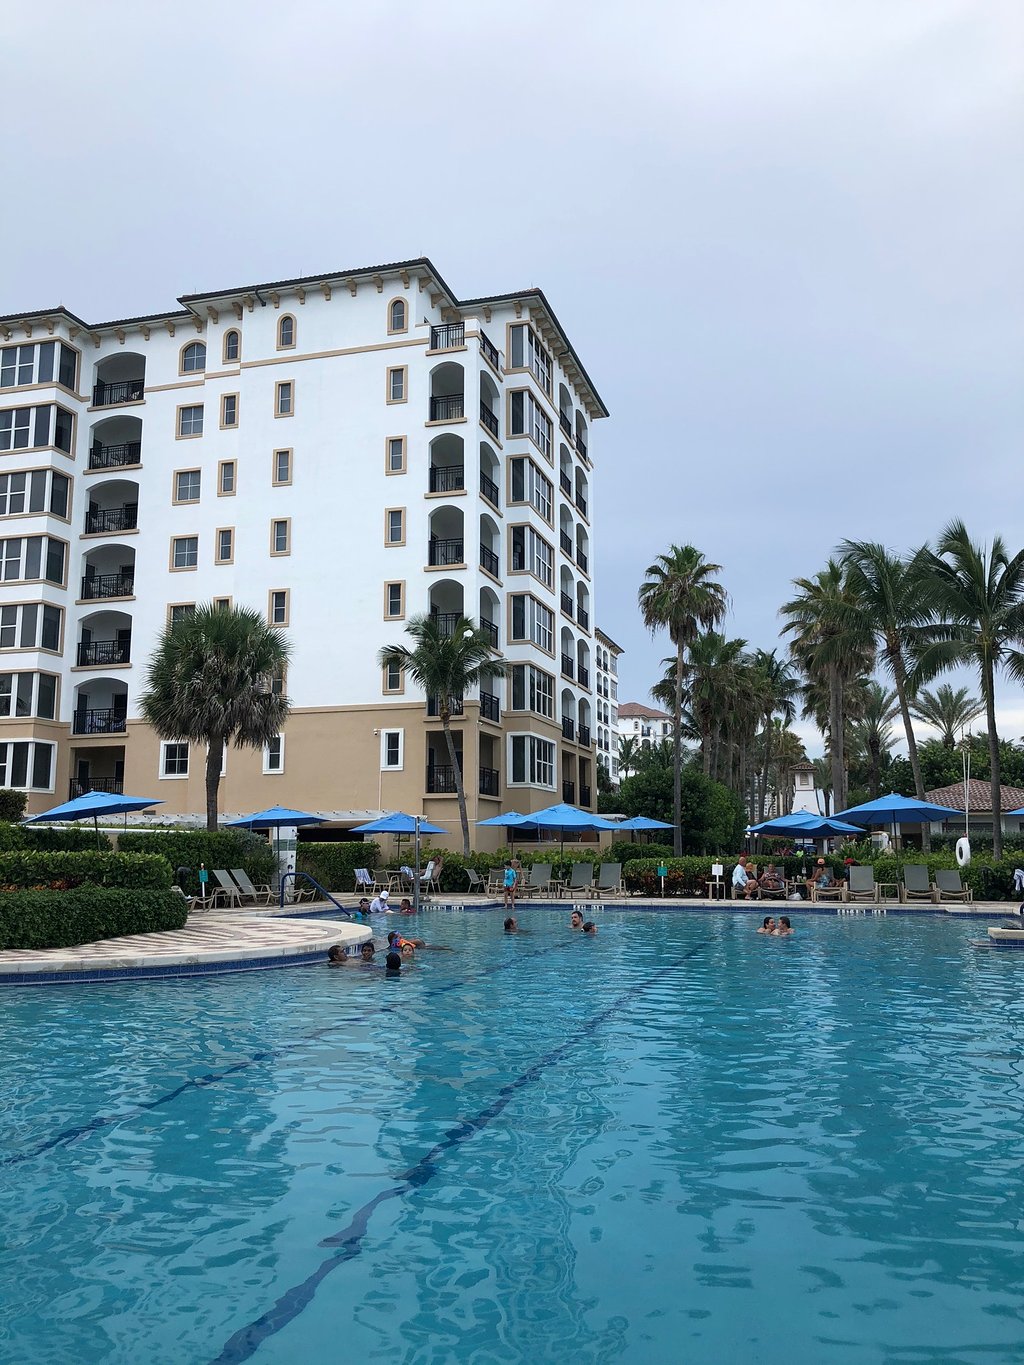 Marriott's Ocean Pointe Pool